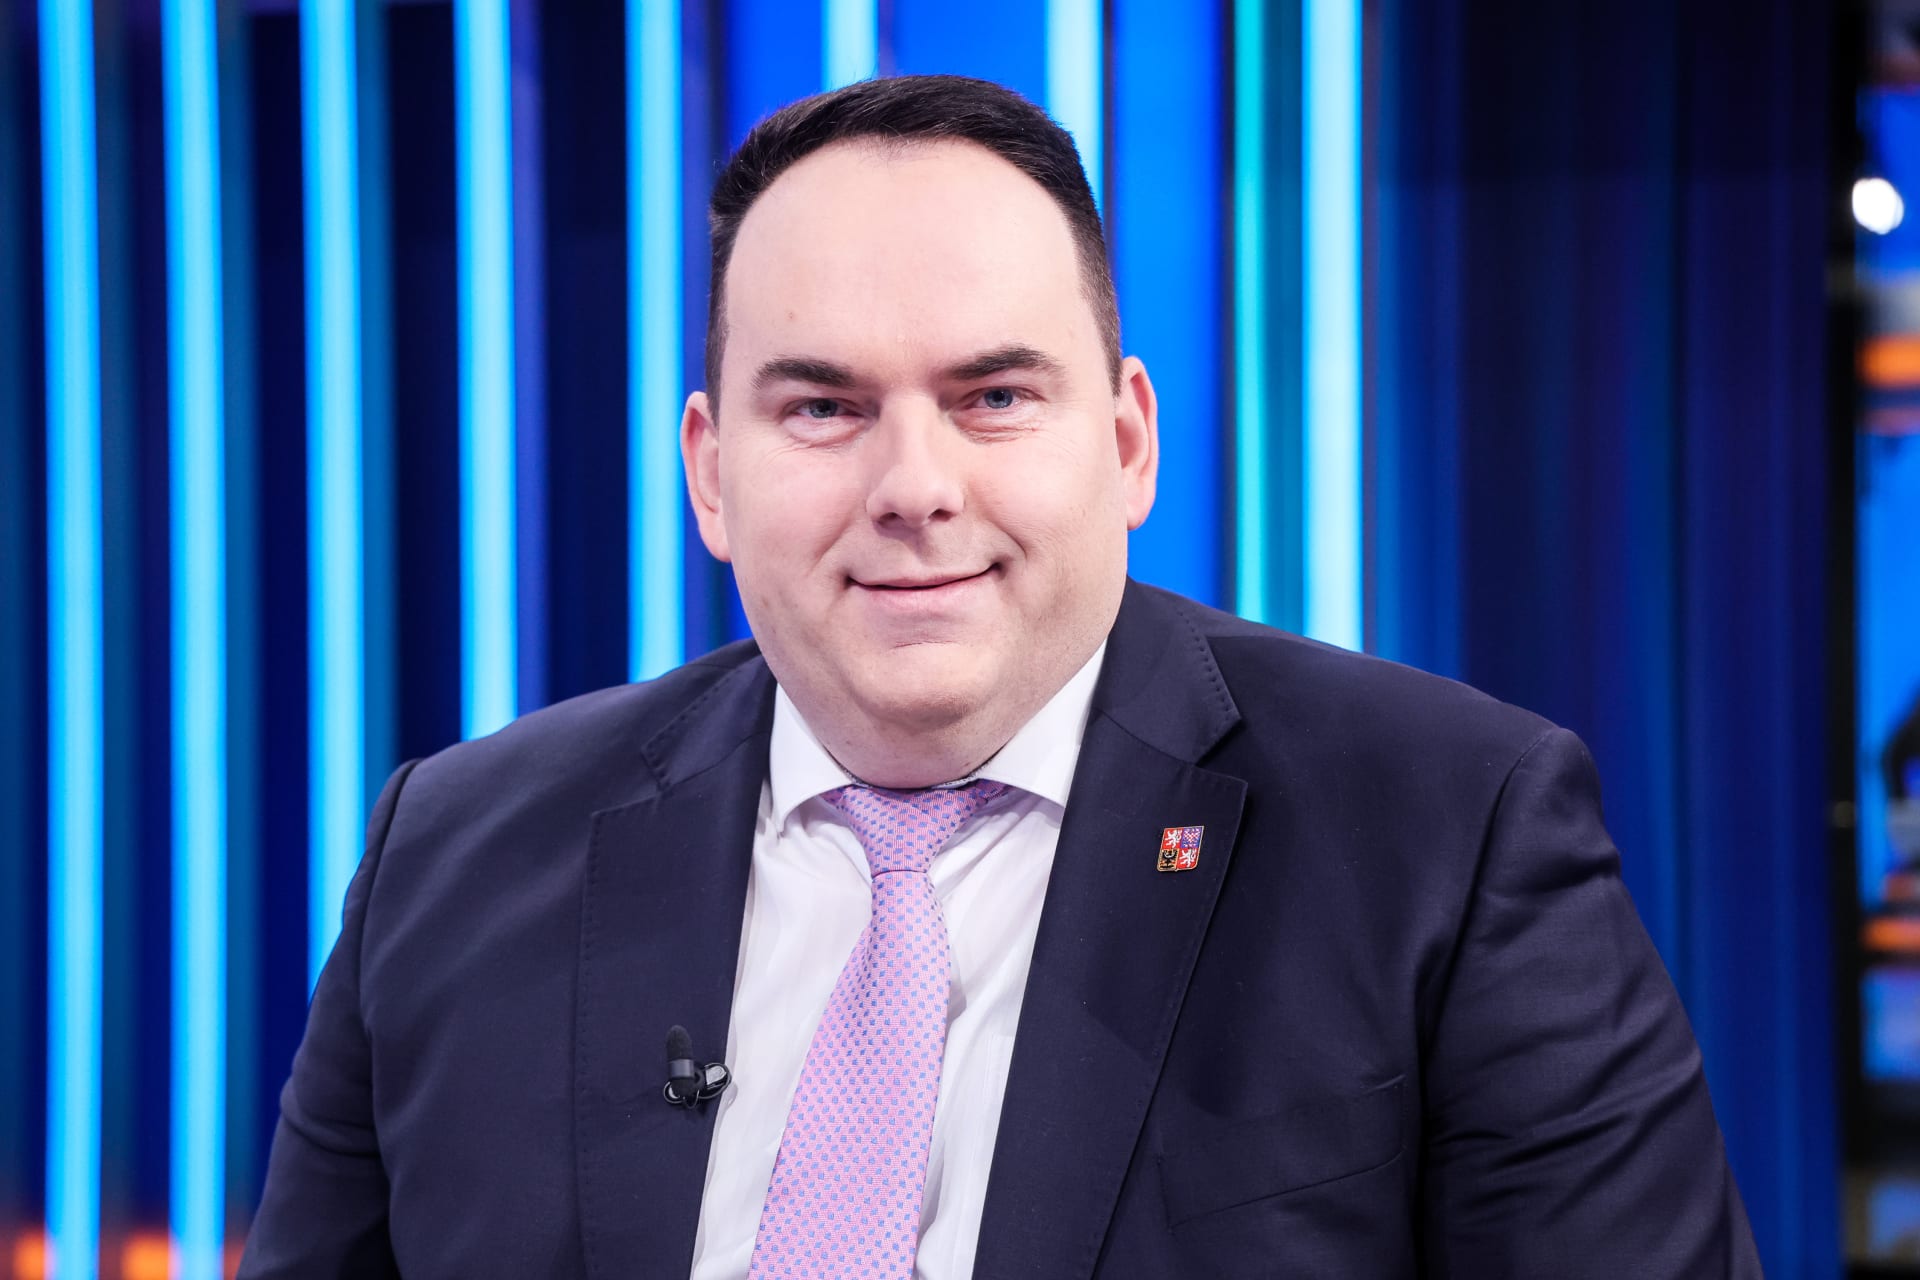 Poslanec a místopředseda rozpočtového výboru Jan Hrnčíř (SPD)